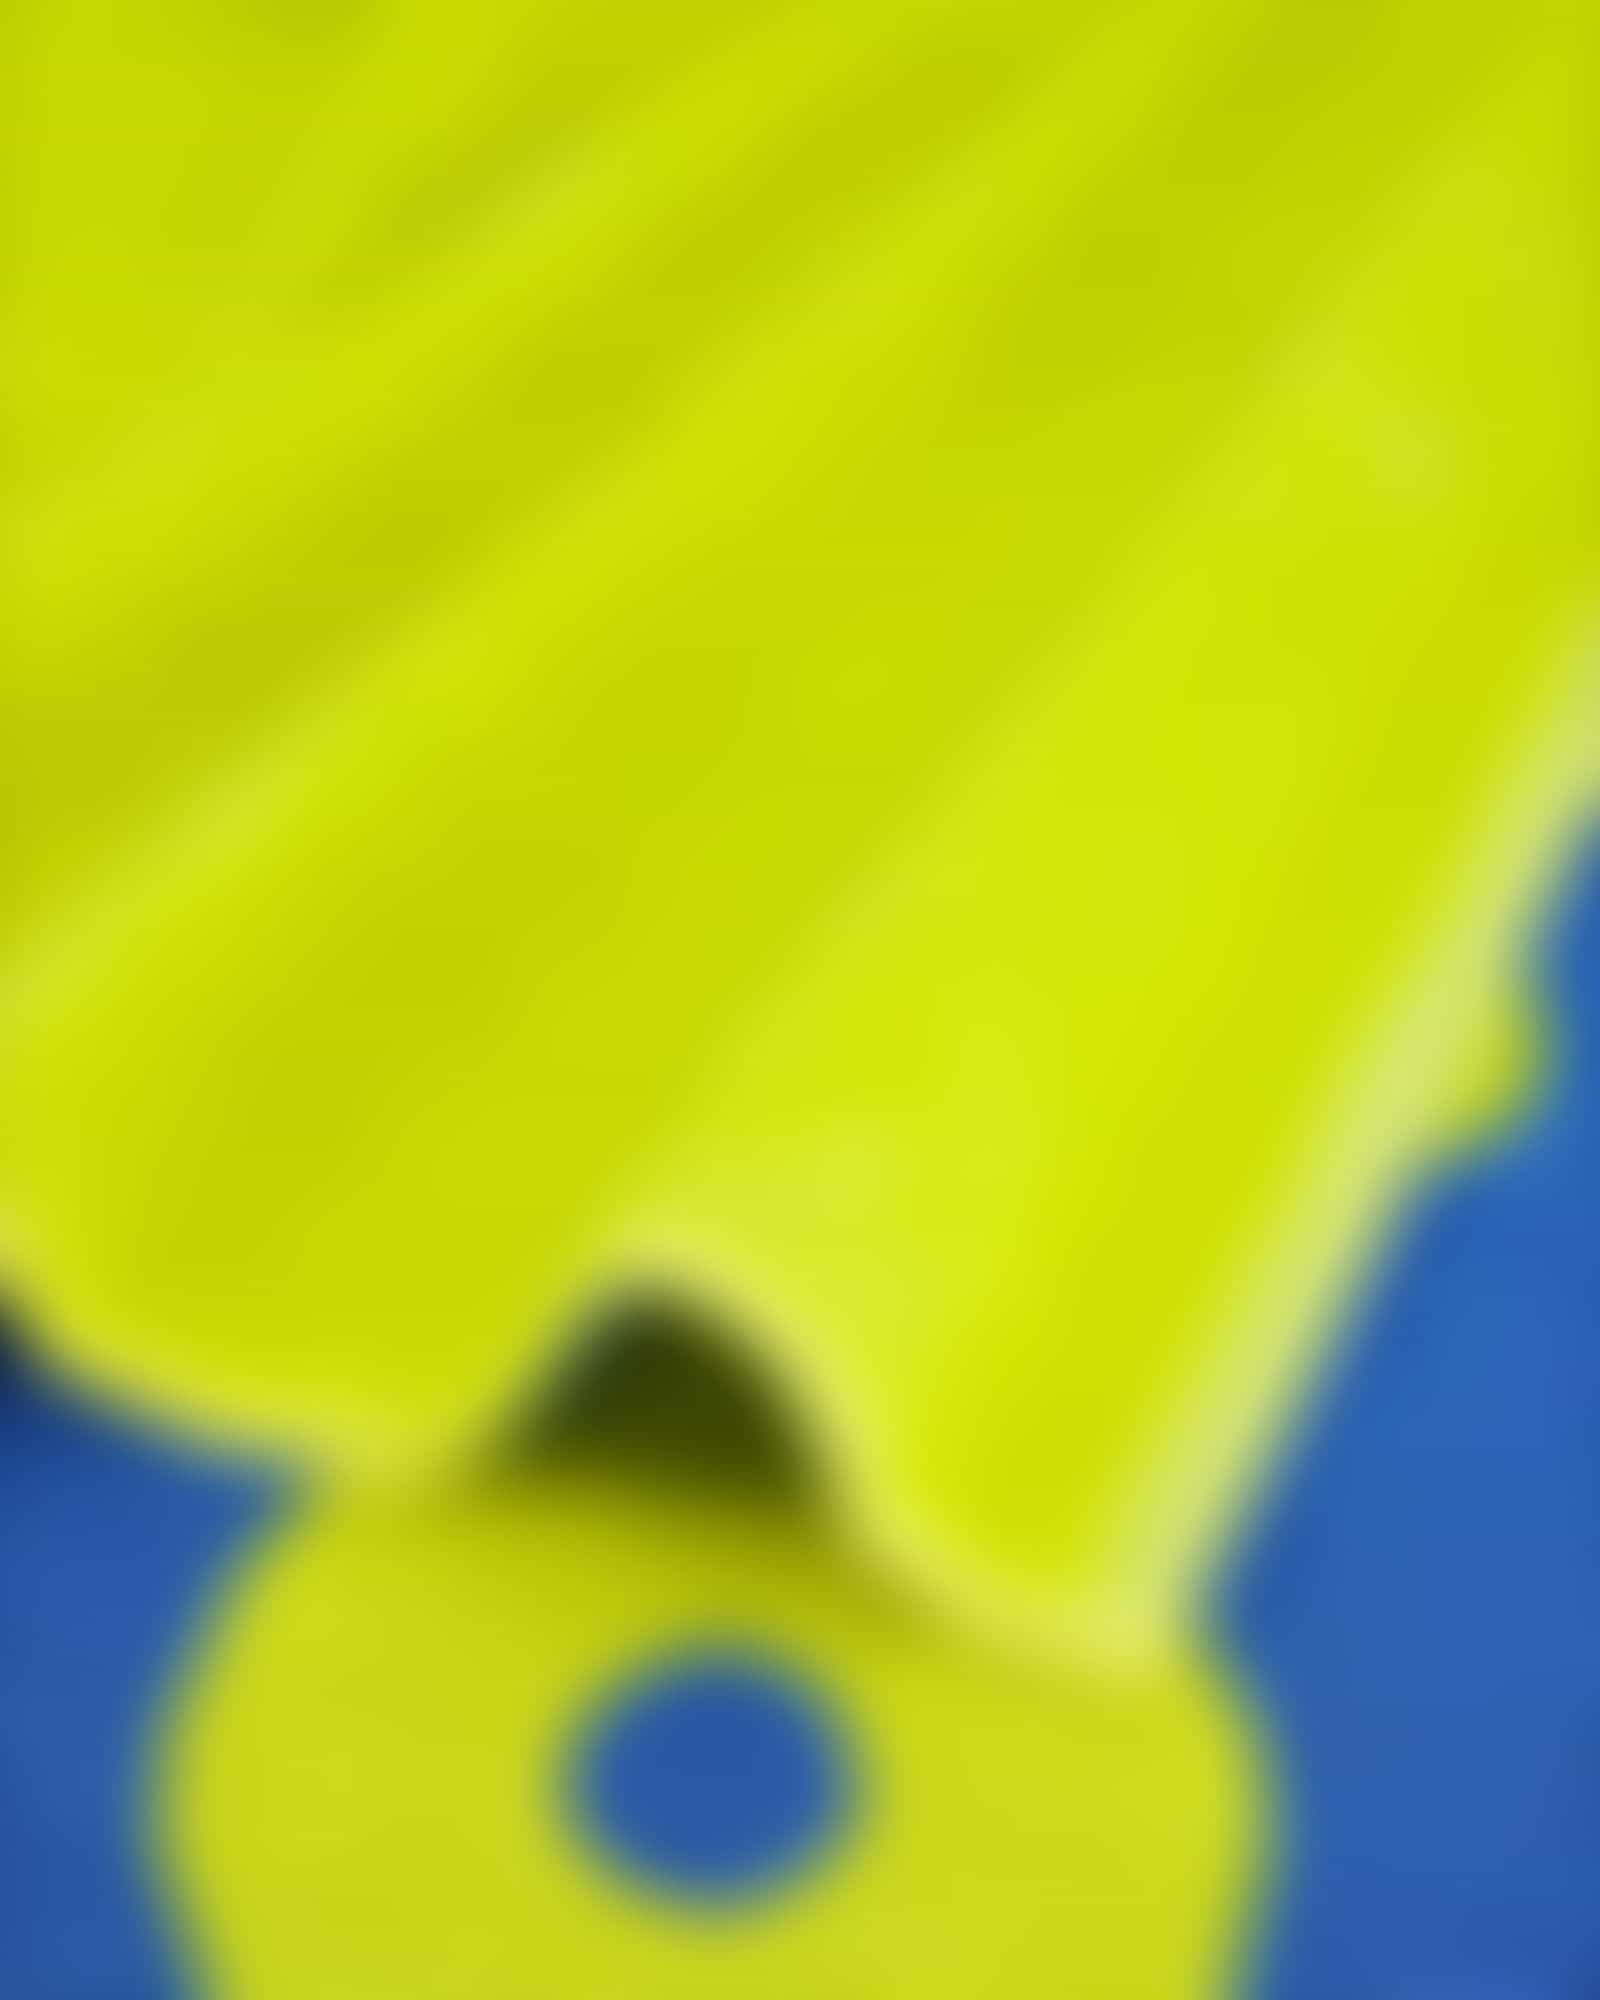 Cawö Beach 5565 Anker 80x180 cm - Farbe: gelb-blau - 51